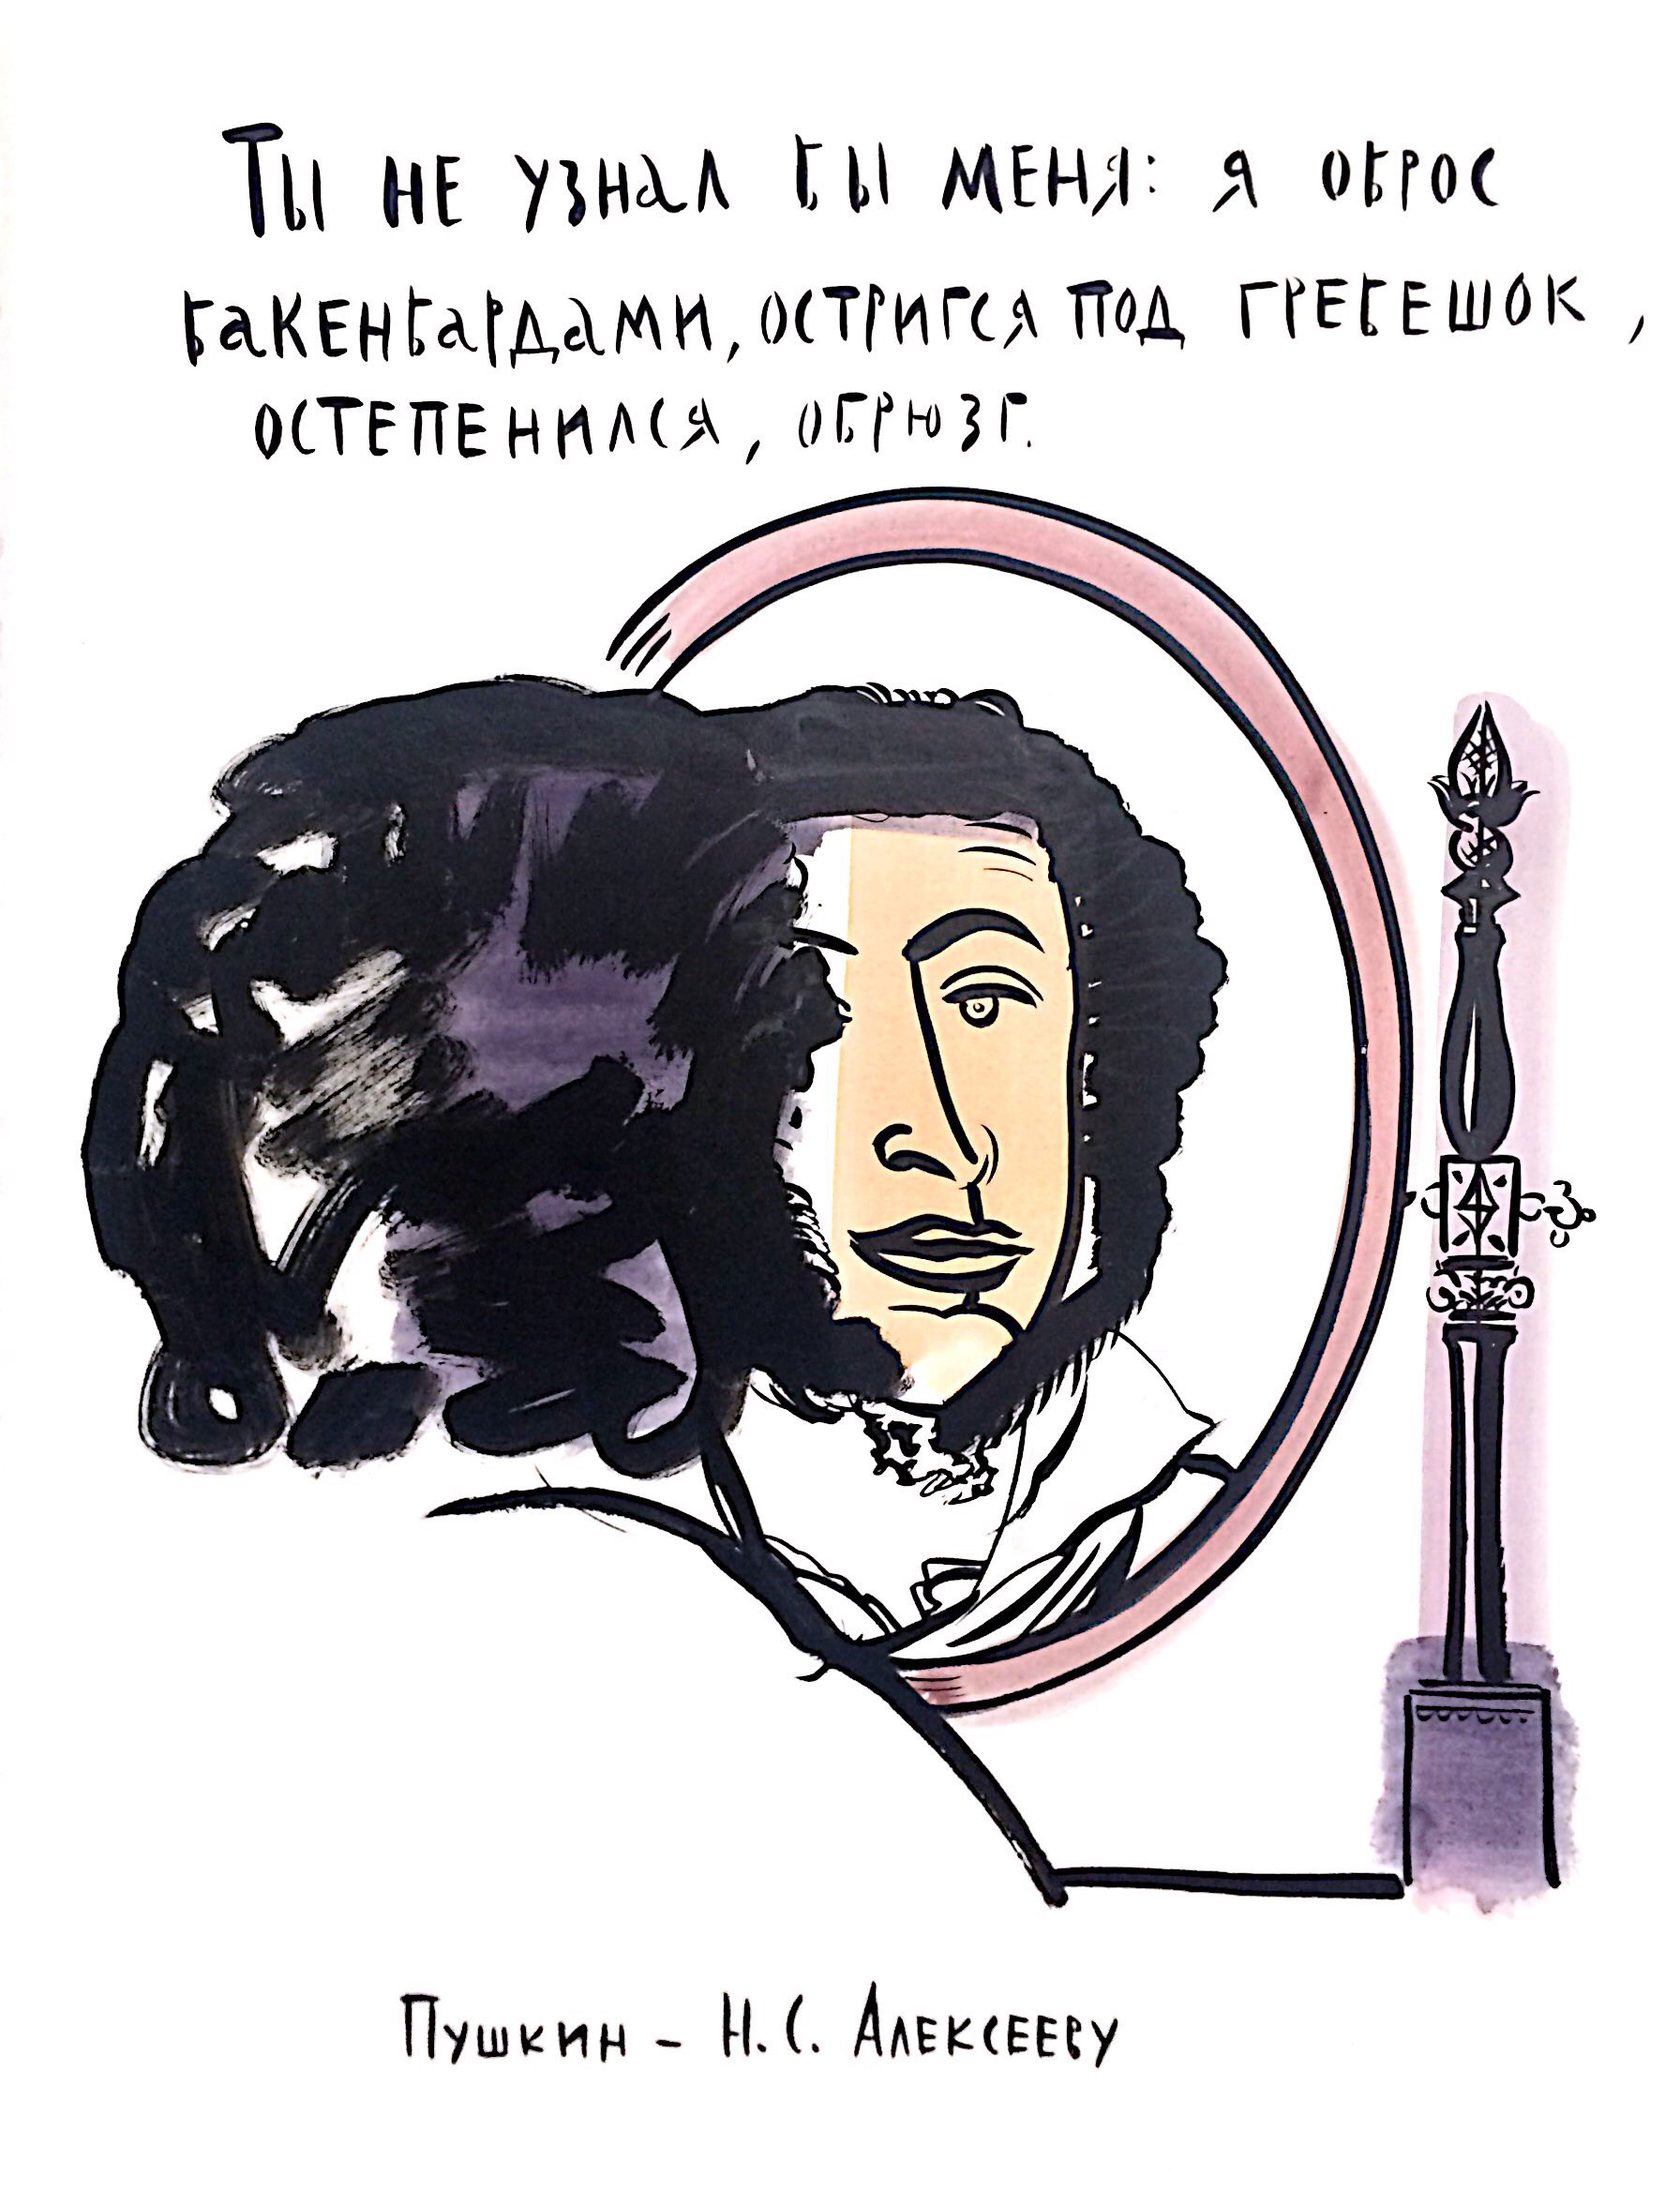 Пушкин, Пушкин, библиотека Пушкина.